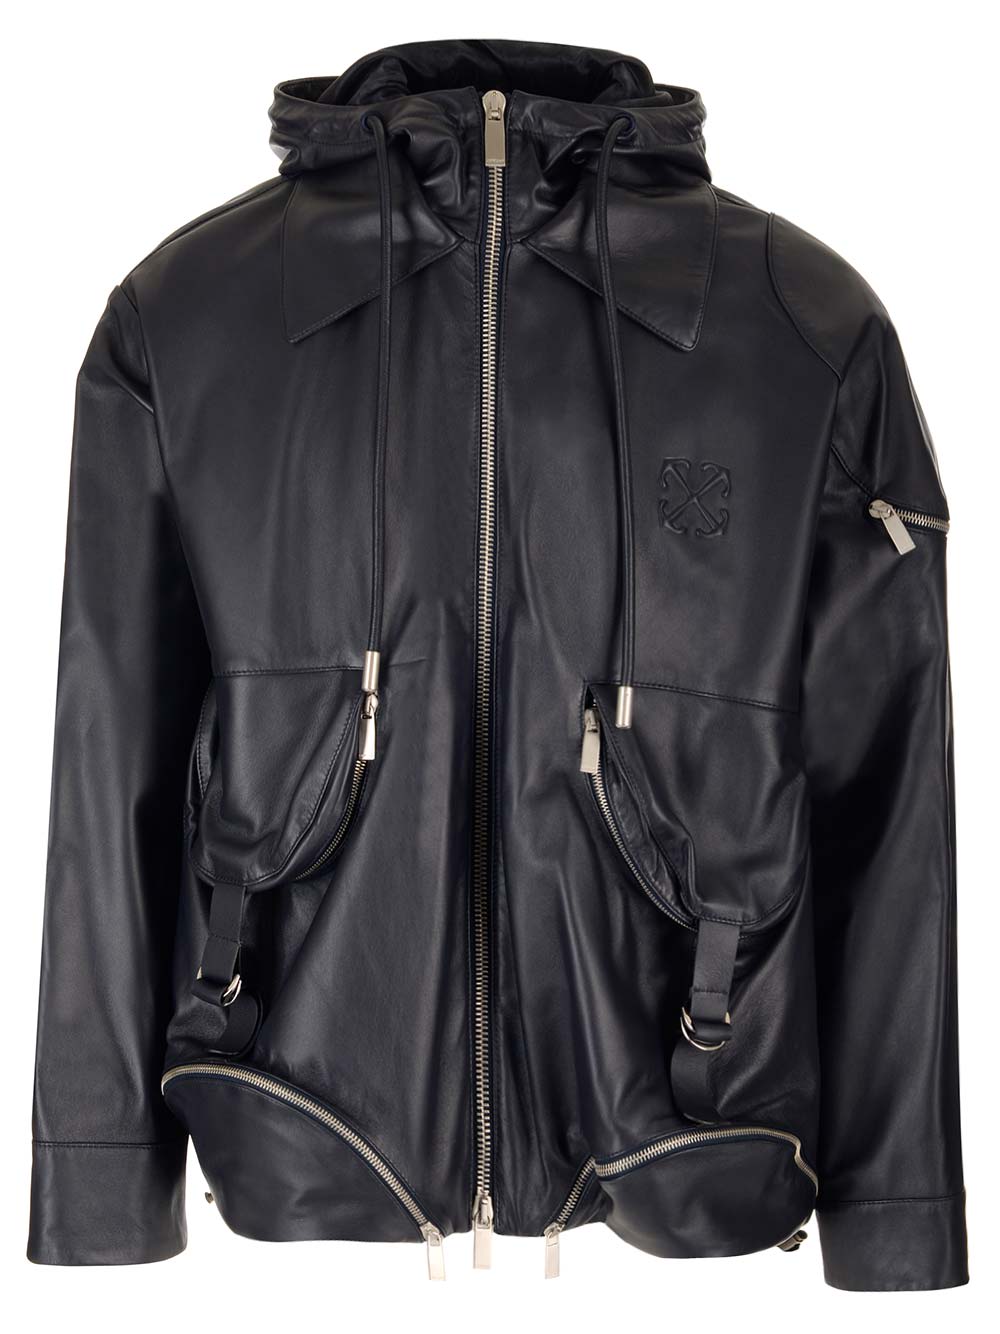 Off-white Black Leather Jacket